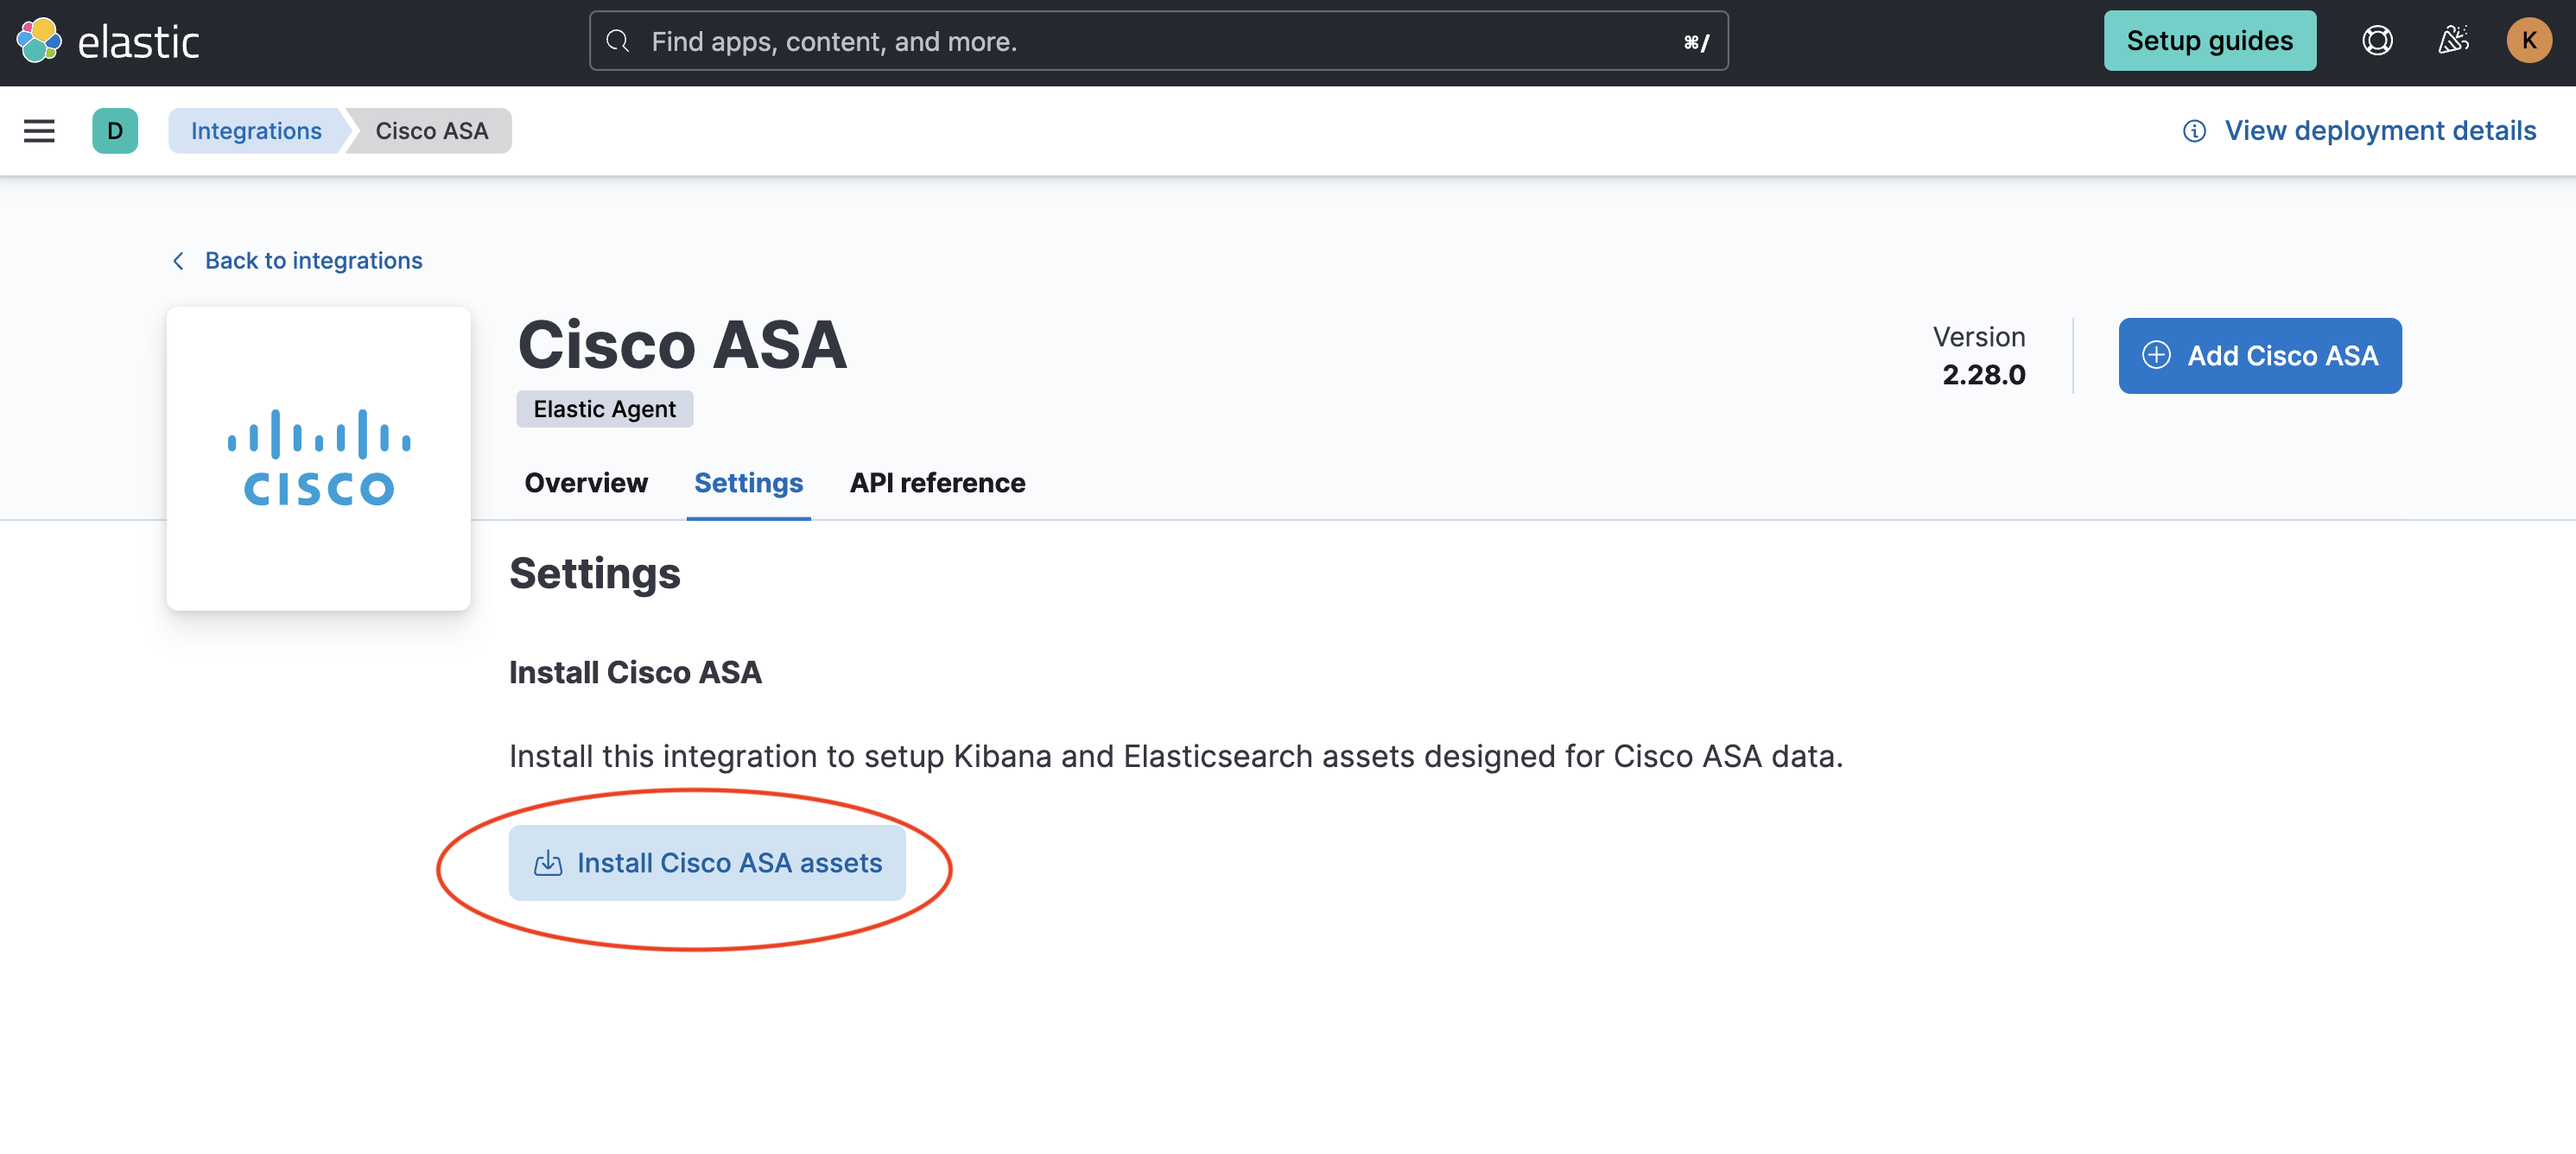 Install Cisco ASA assets